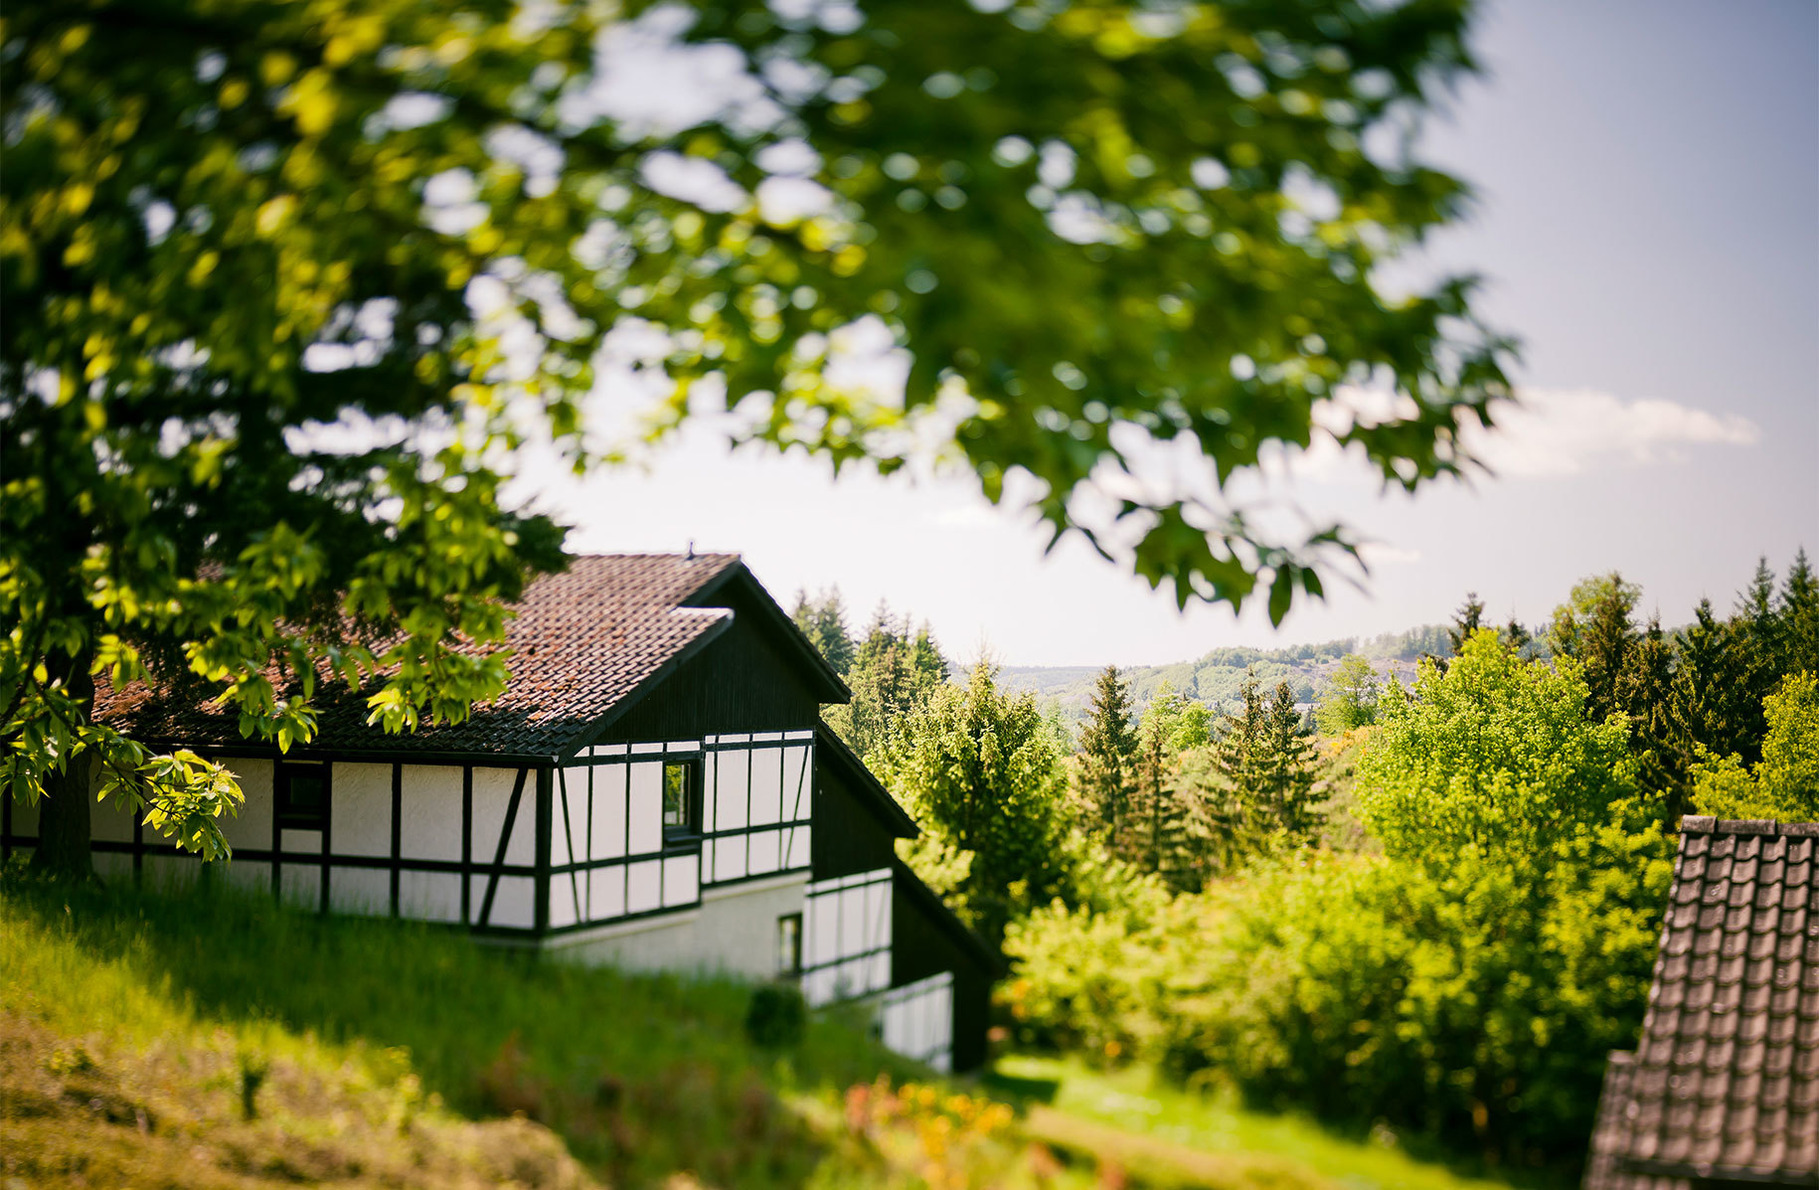 Ferienhaus "Ahorn" Ferienhaus in der Eifel